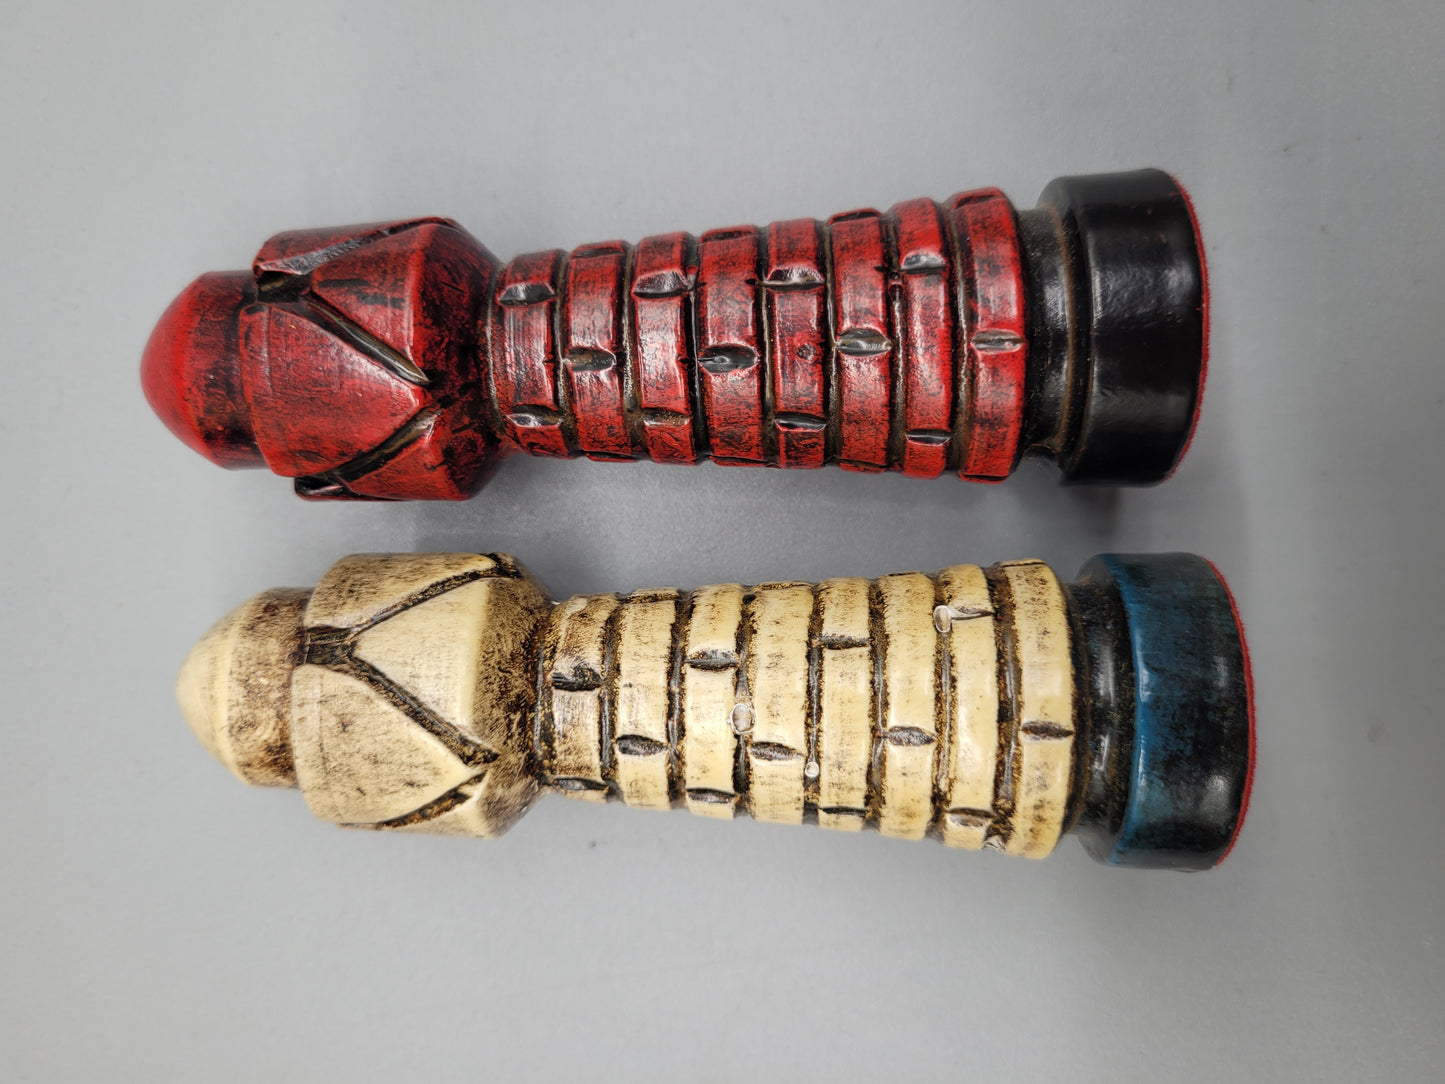 Antike Schachfiguren aus Holz